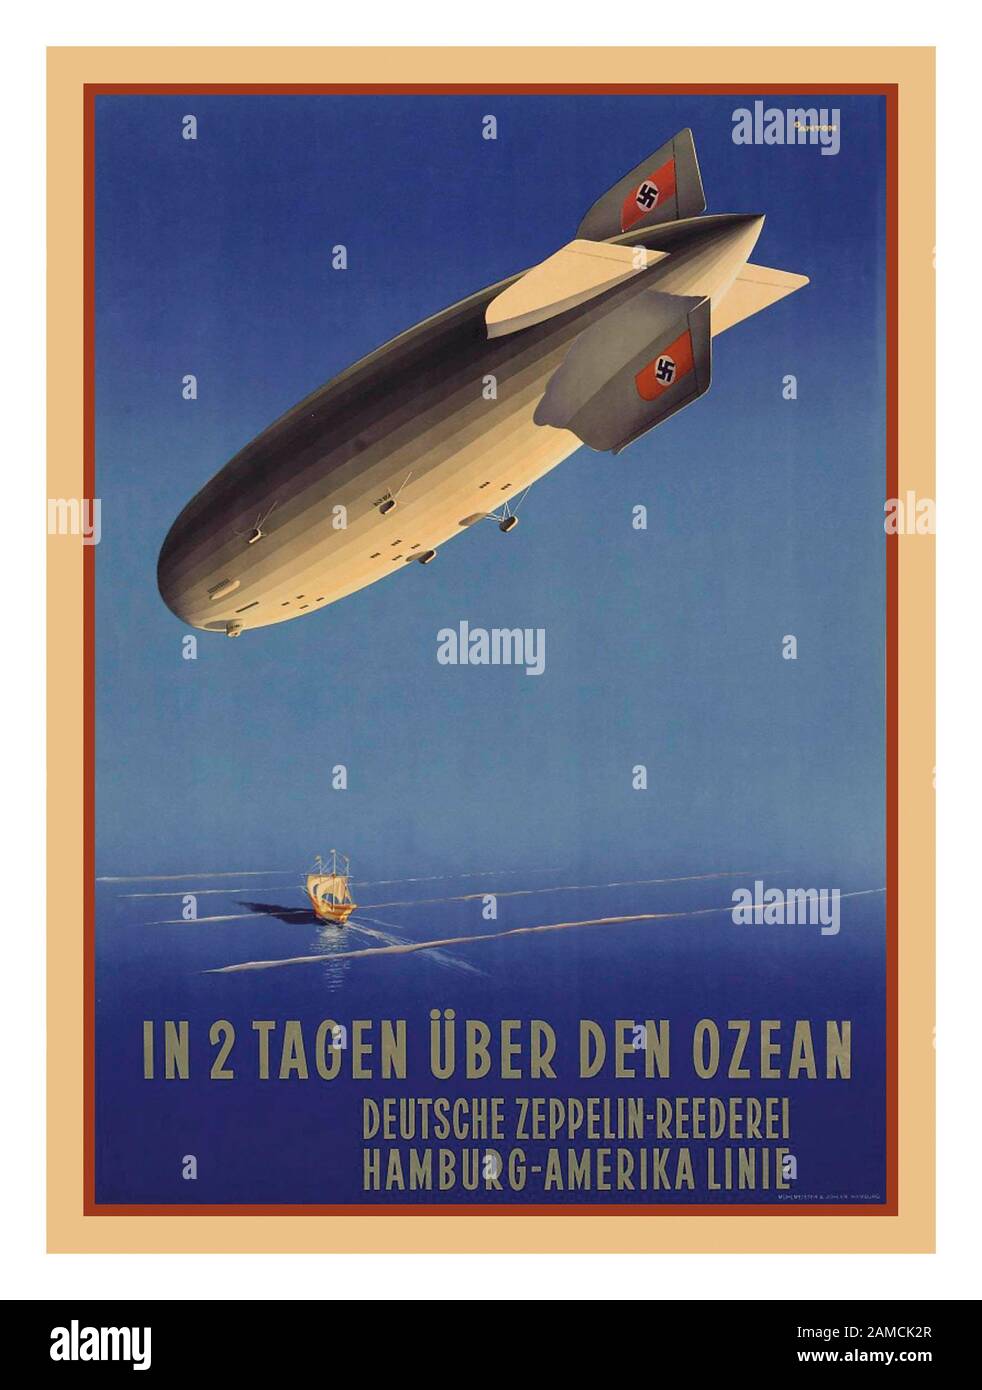 Deutsche Luftschiff-Zepelin aus den 1930er Jahren mit den Nazi Party Swastikas auf dem Leitfingen-Plakat "IN 2 TAGEN UBER DEN OZEAN" ( IN 2 TAGEN ÜBER DEM OZEAN) HAMBURG-AMERIKA versetzte lithograph in Farben, c. -15, gedruckt von Mühlmeister & Johler Hamburg, Anton Ottoman (1895-1976) Stockfoto